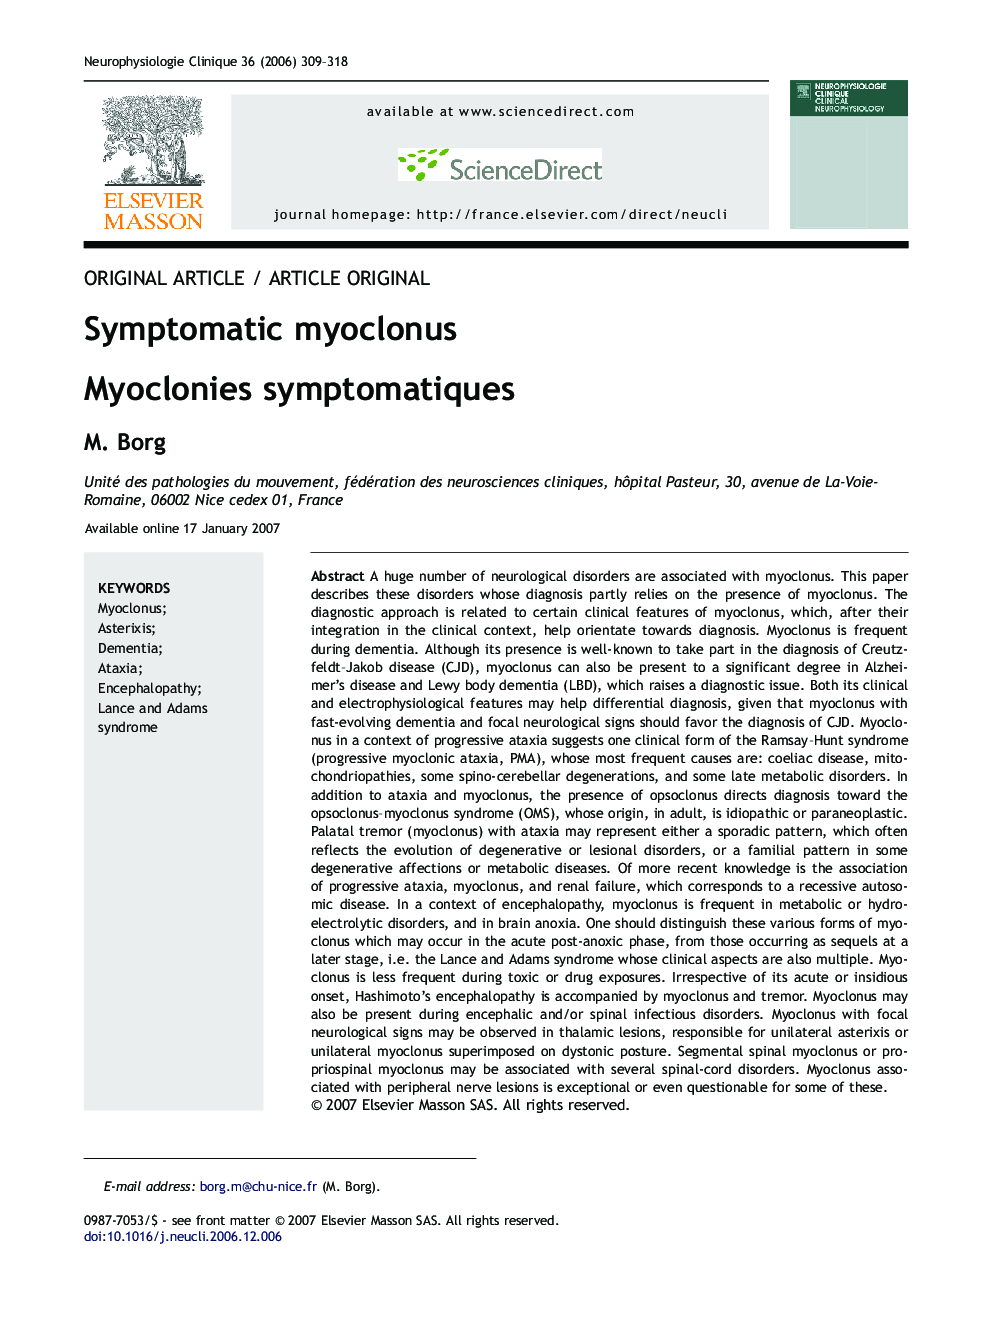 Symptomatic myoclonus